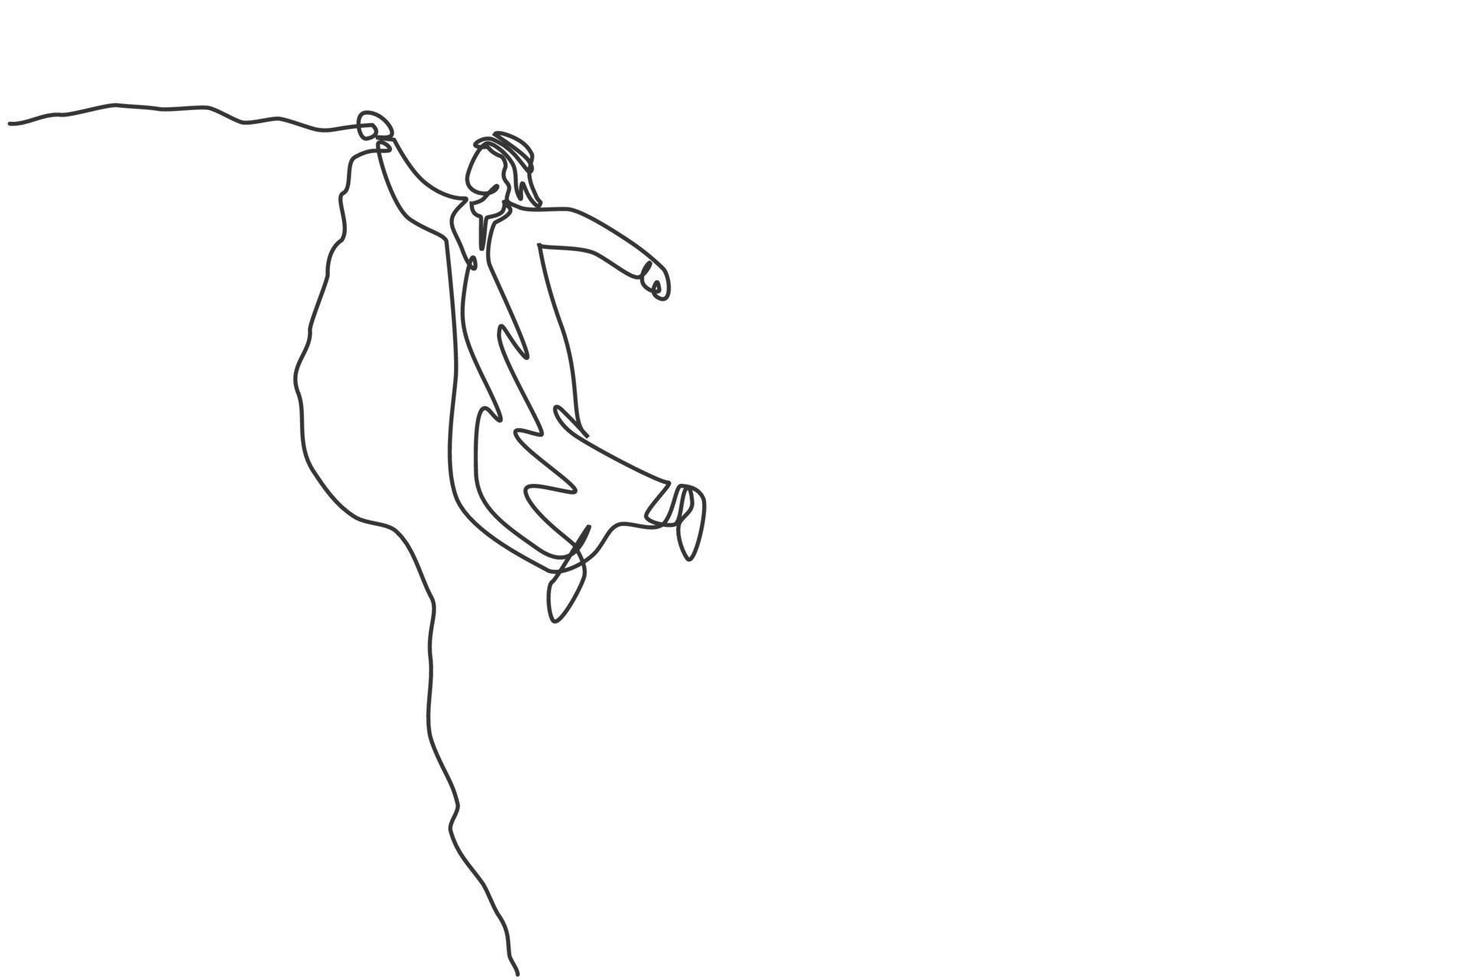 kontinuerlig enradsteckning av ung stilig arabisk manlig arbetare som hänger tätt på klippkanten. framgång affärskamp, metafor minimalistisk koncept. enkel linje rita design vektor grafisk illustration